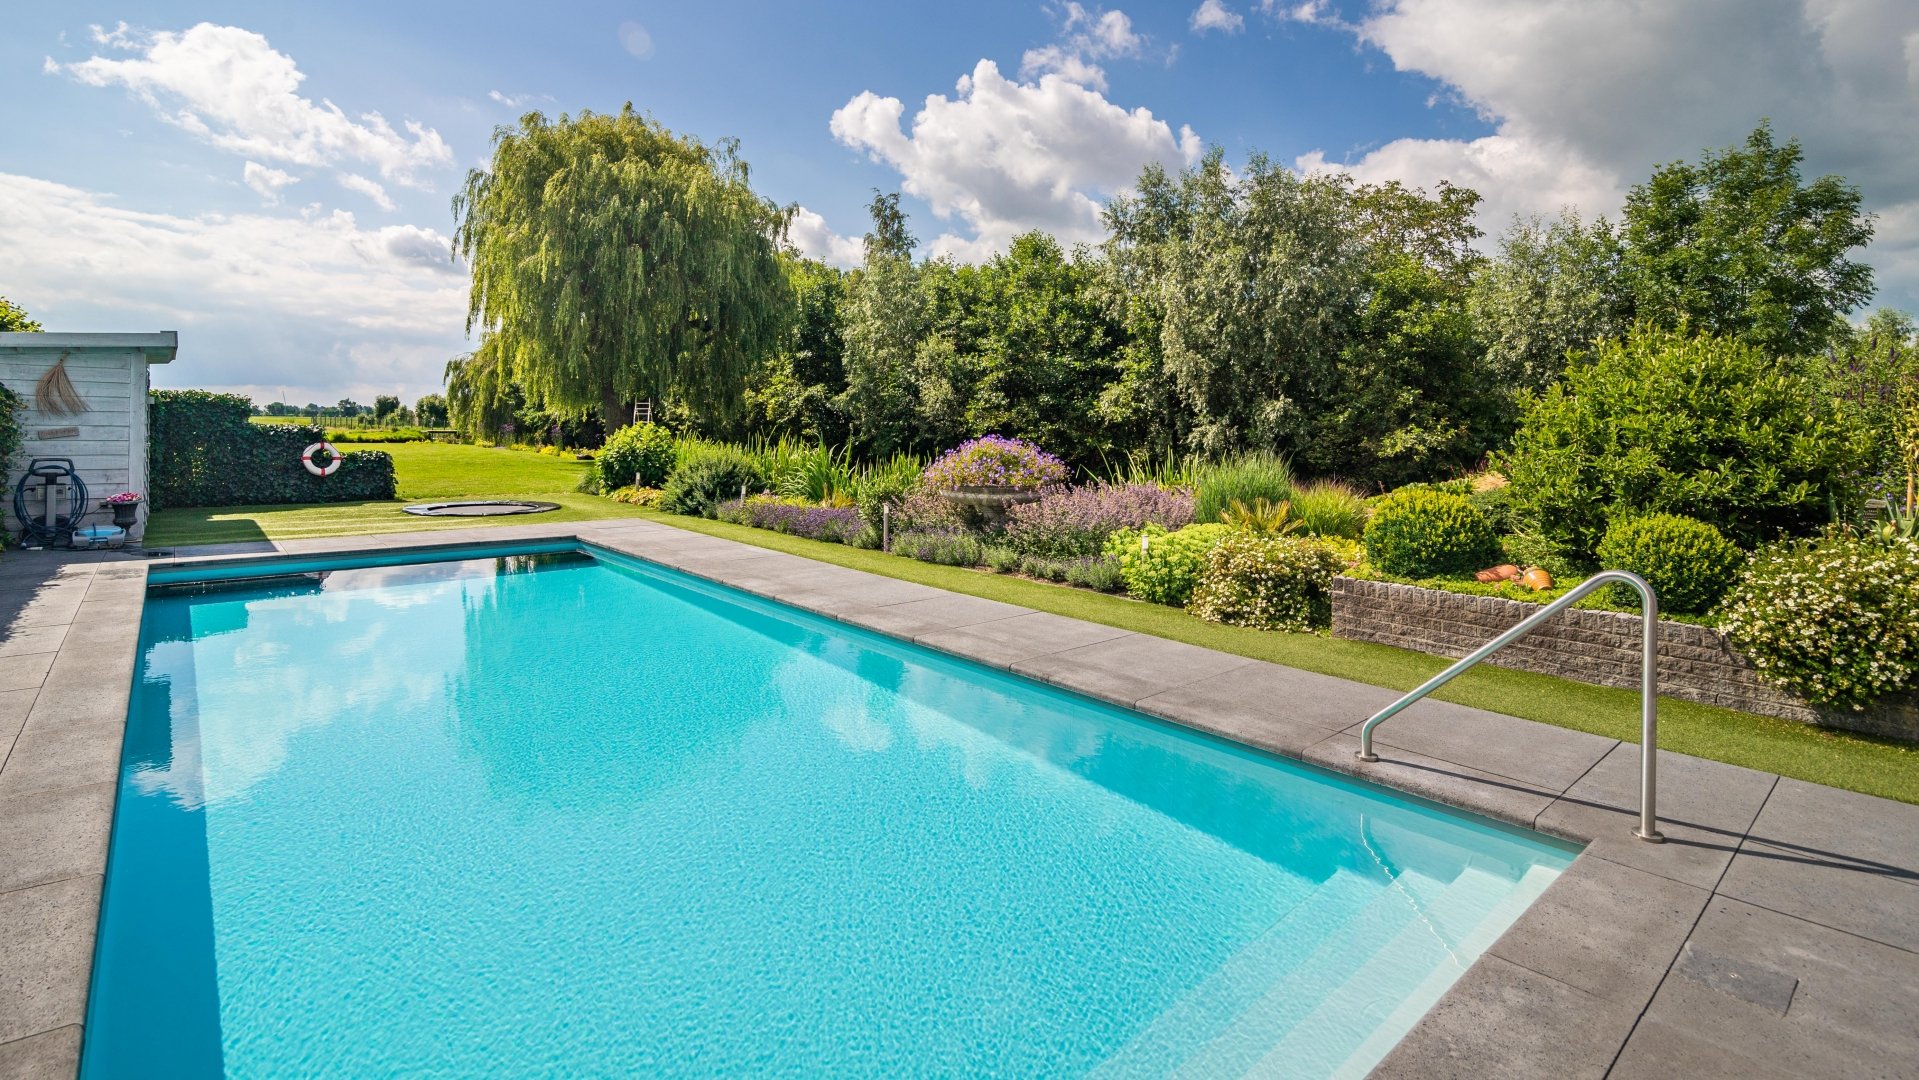 Villa-met-zwembad-omringd-door-groen-16-De-Ruijter-Tuinen